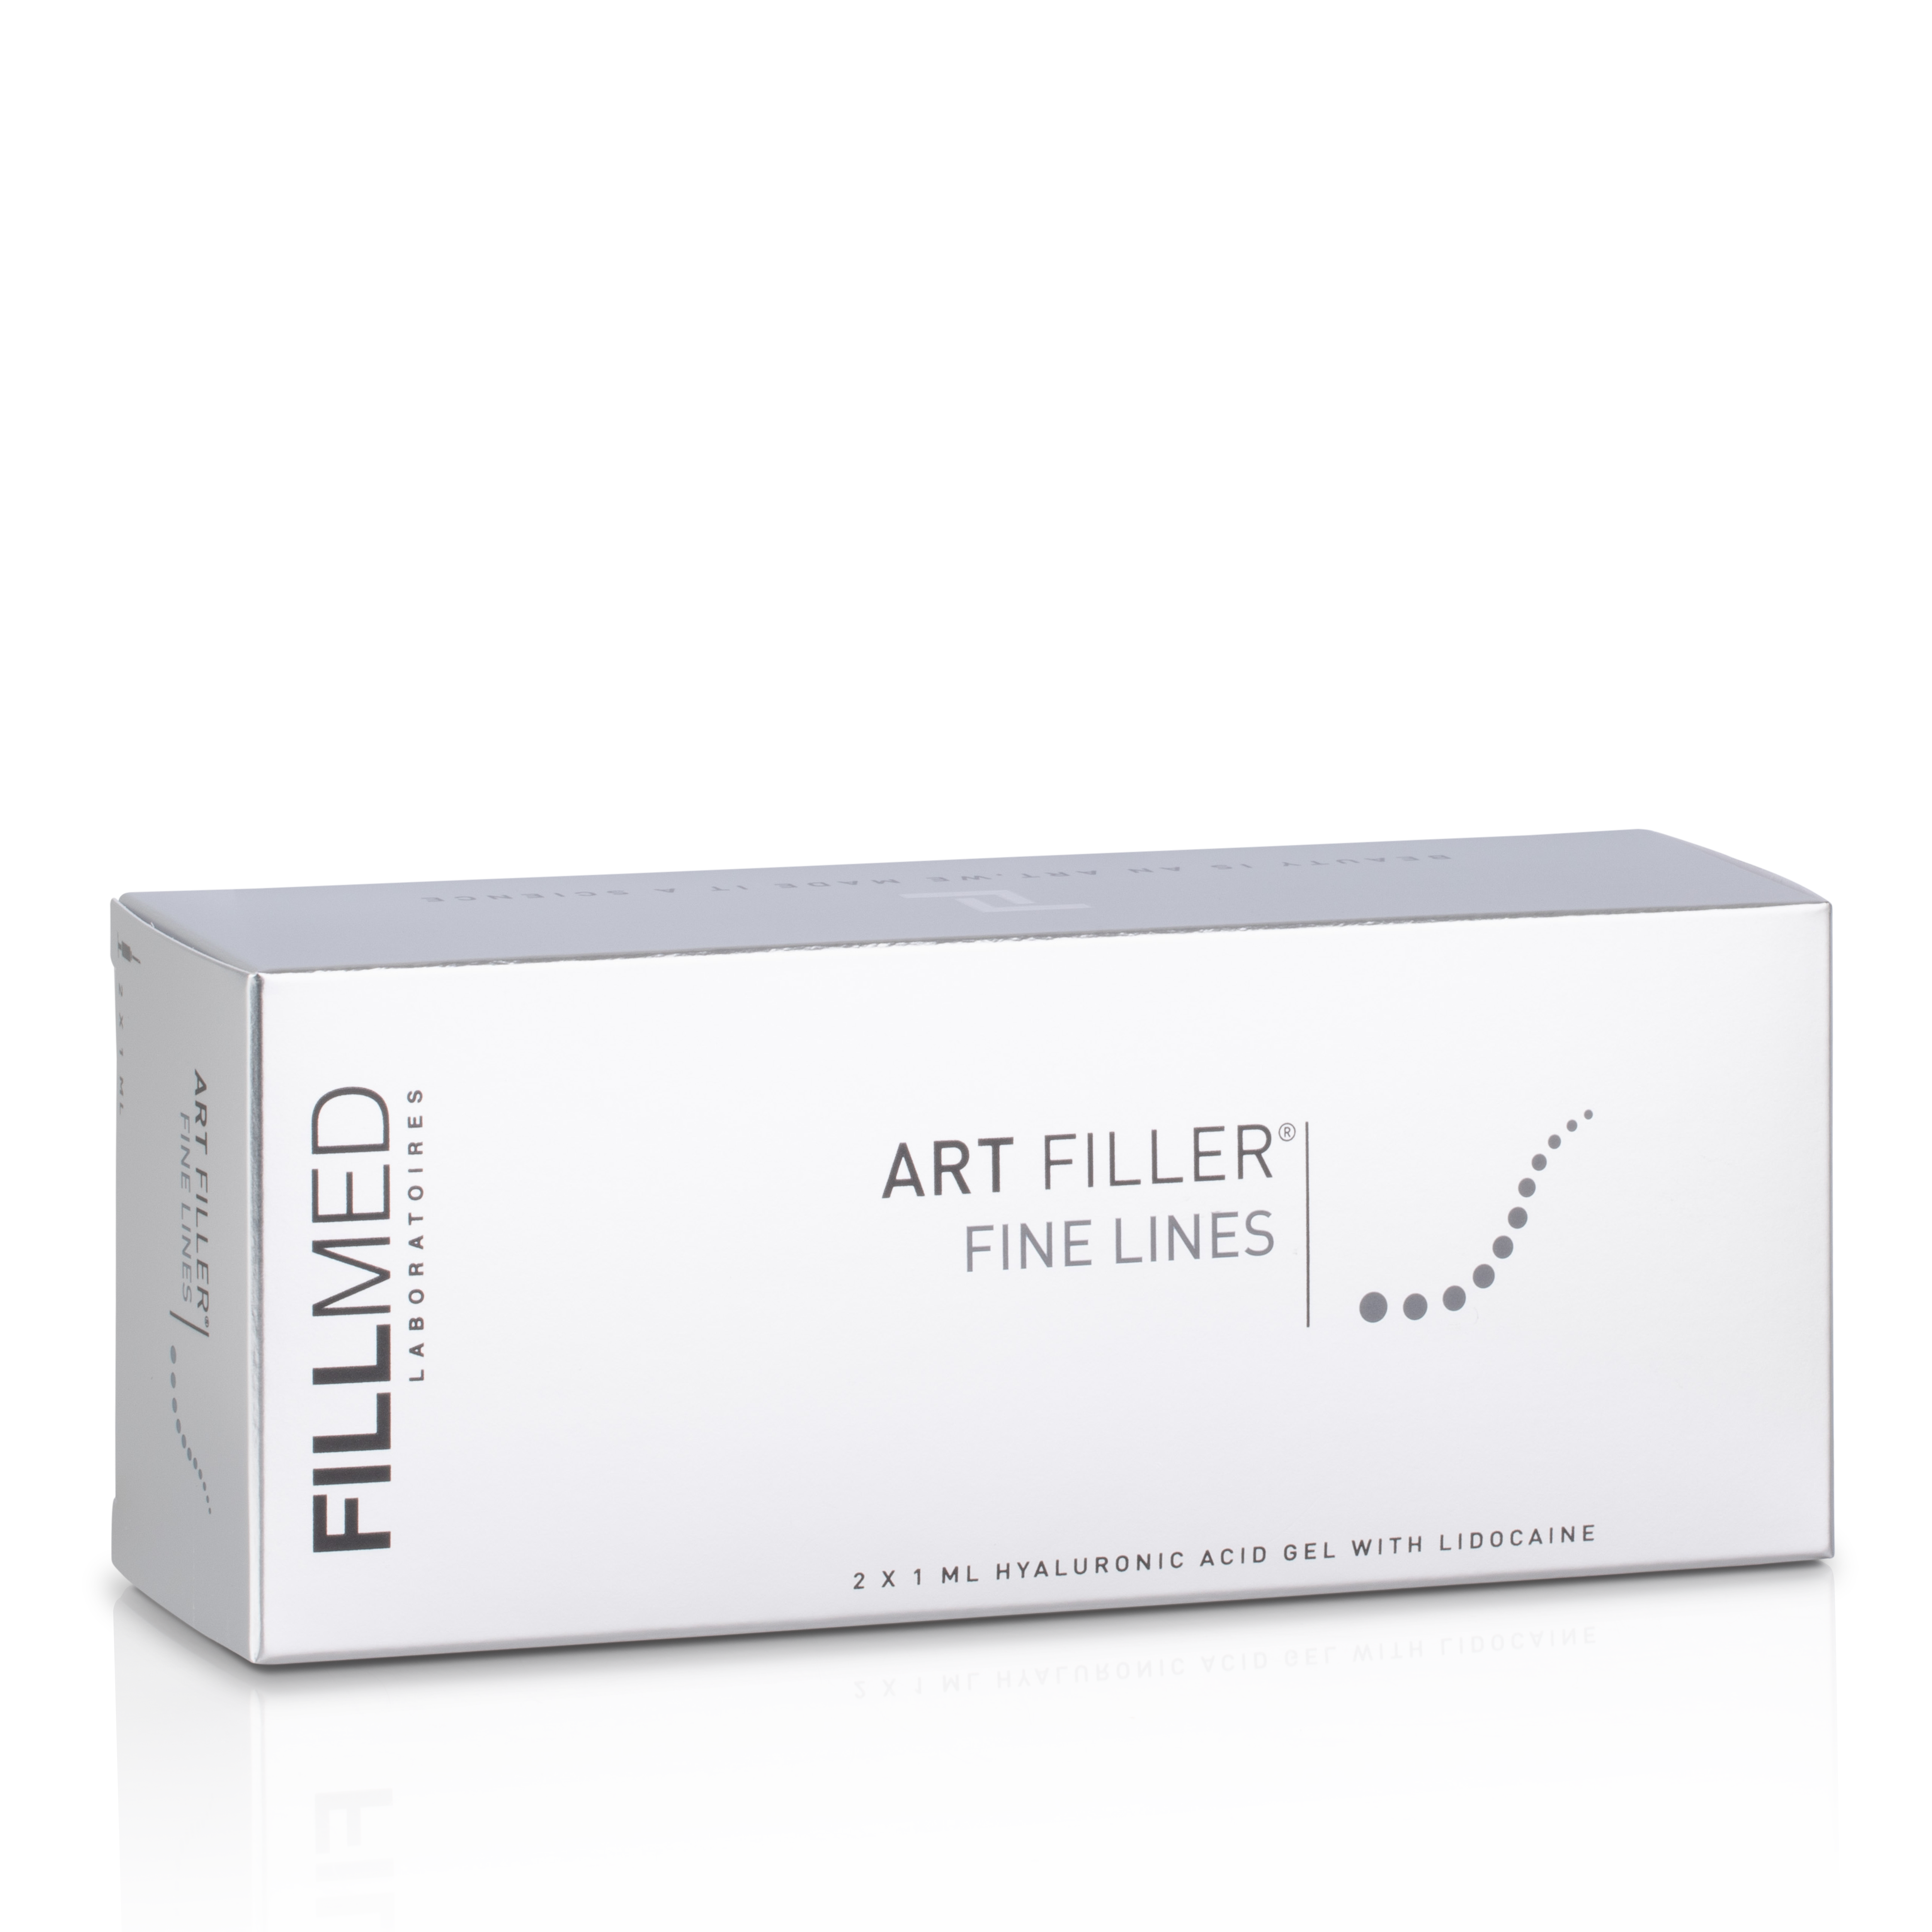 Филлеры антибиотики. Art Filler Universal 1,2 мл. Fillmed филлеры. Арт филлер Файн Лайнс. Art Filler Fine lines (2*1,0 мл).